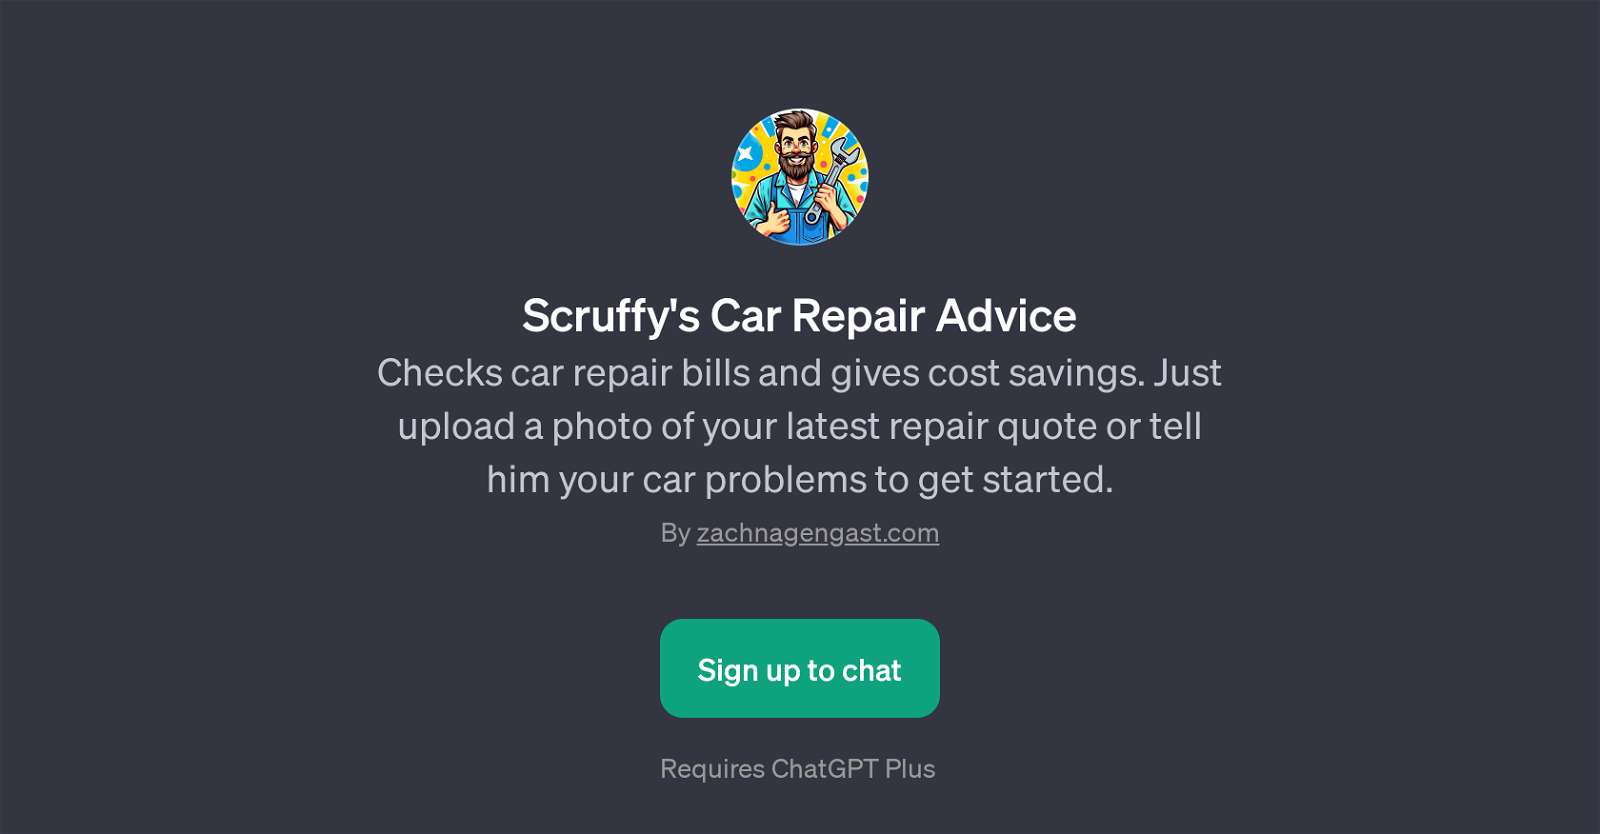 Scruffy's Car Repair Advice website